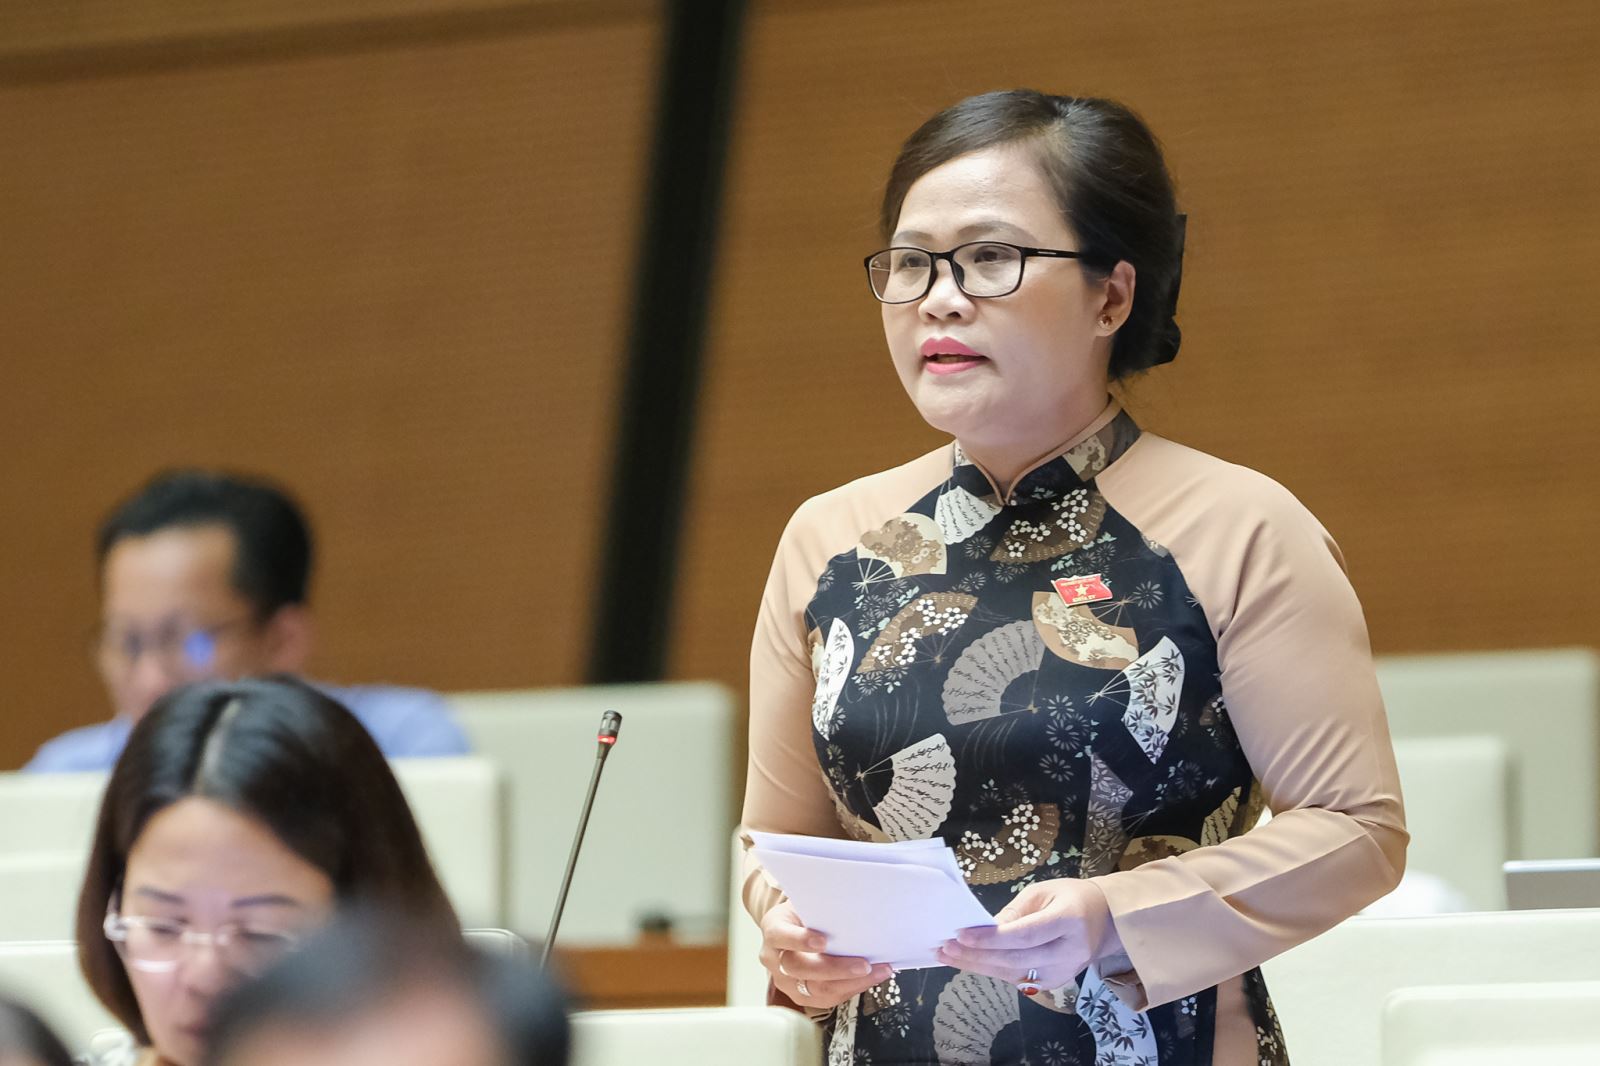 ĐBQH Nguyễn Thị Sửu – Phó trưởng đoàn ĐBQH chuyên trách tỉnh Thừa Thiên Huế cho biết, nội dung về công tác nhân sự được cử tri và nhân dân cả nước quan tâm.